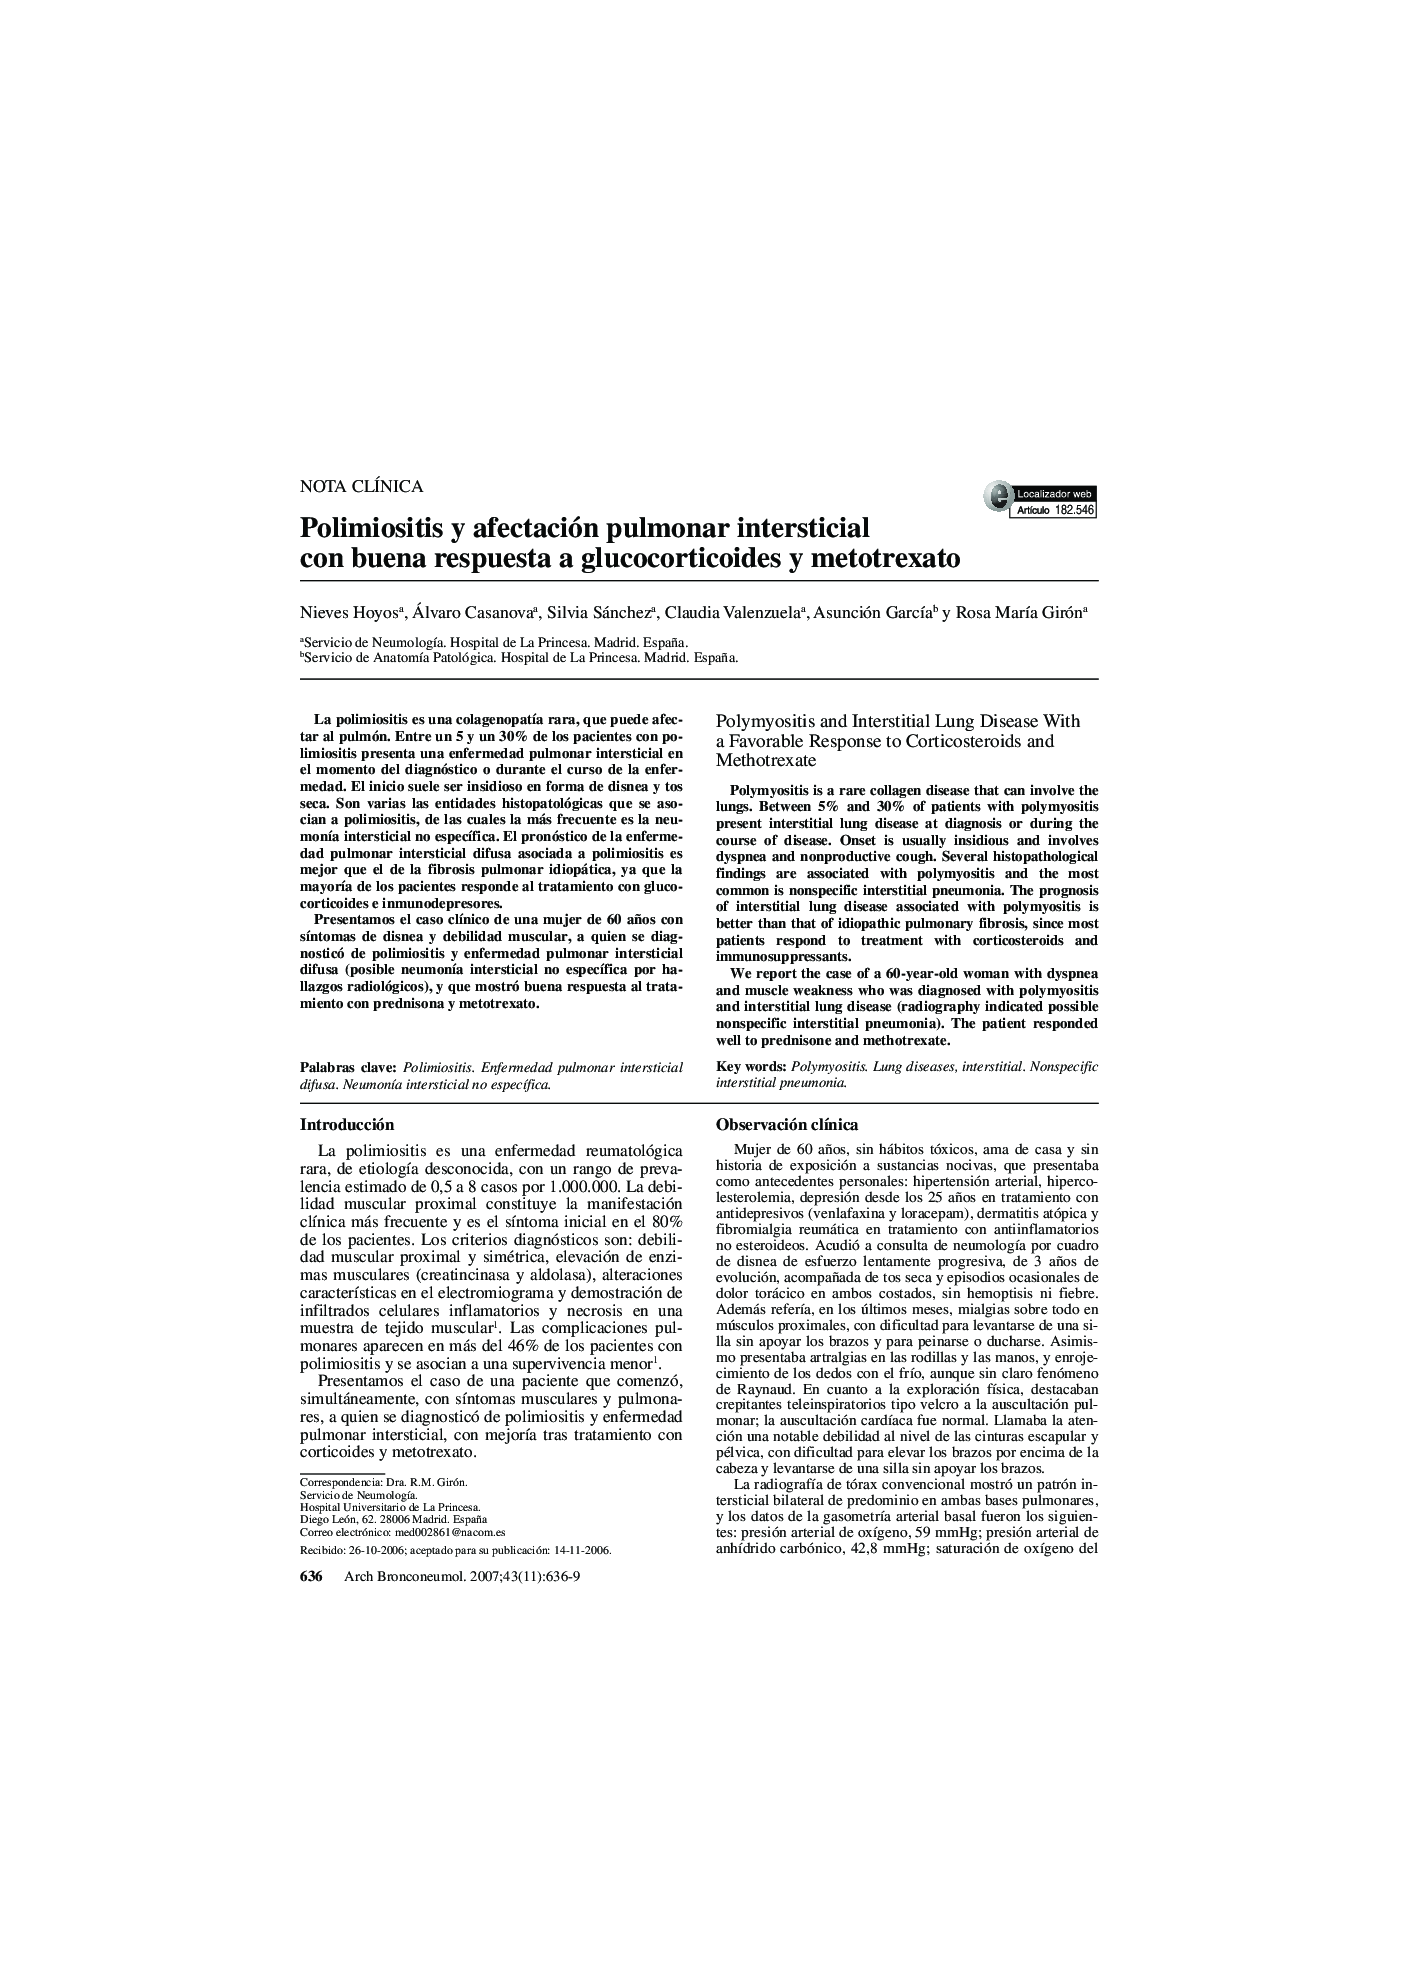 Polimiositis y afectación pulmonar intersticial con buena respuesta a glucocorticoides y metotrexato